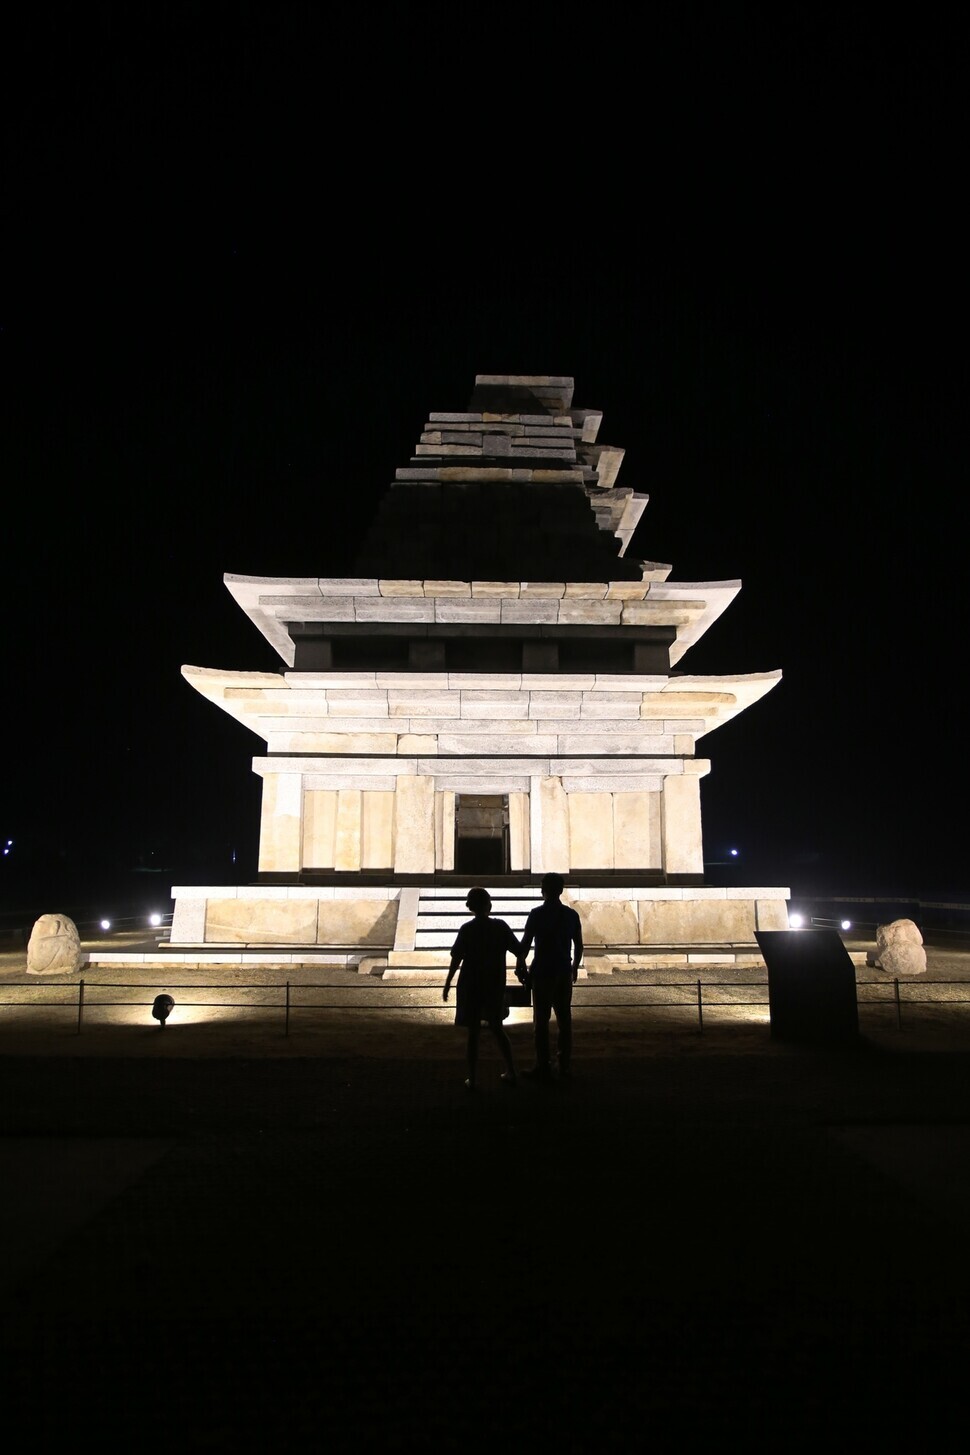 The Mireuksaji Stone Pagoda at night. (Choi Seong-wook, photographer)